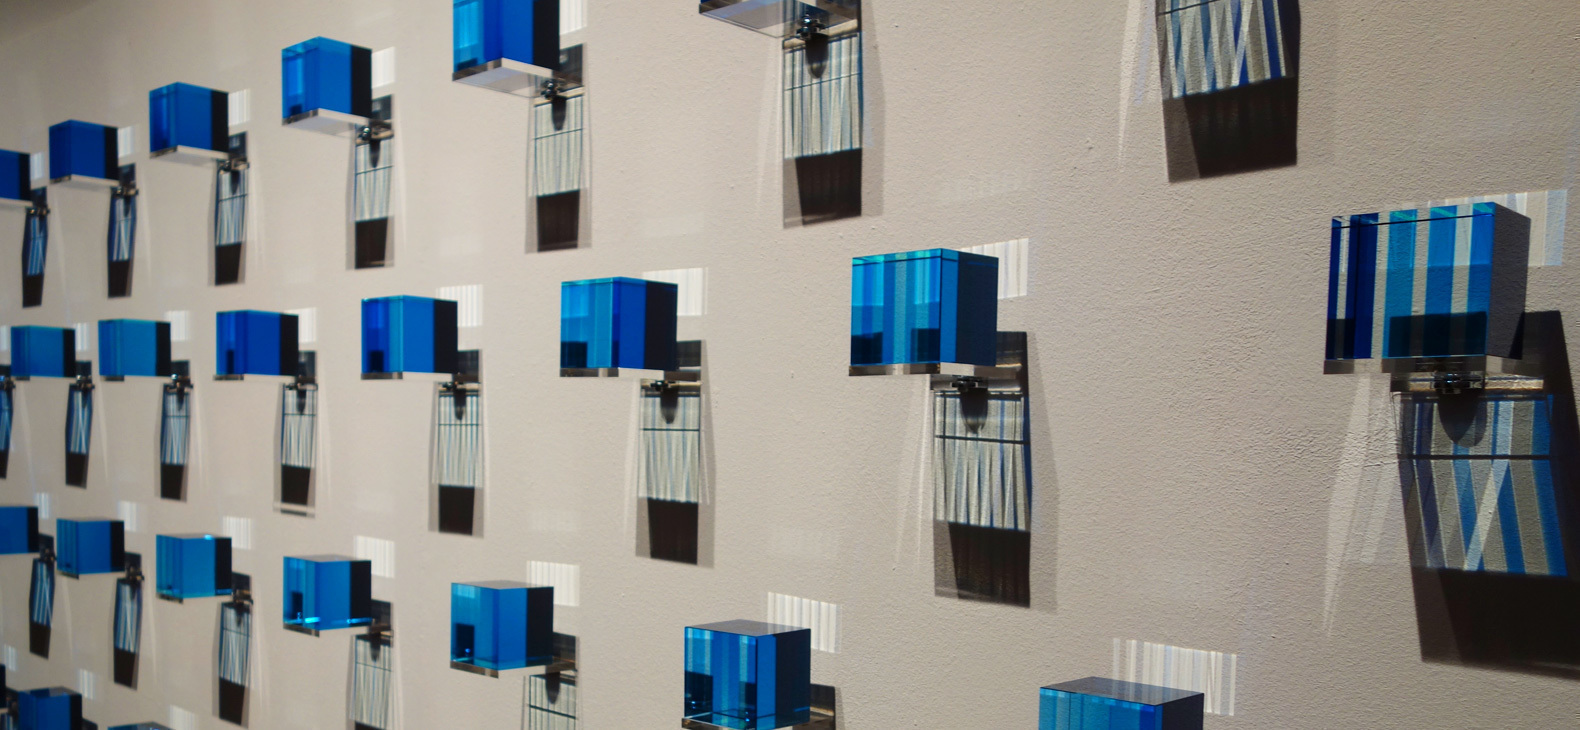 Blaue beleuchtete Plexigalswürfel werfen doppelte Schatten auf eine graue Wand.